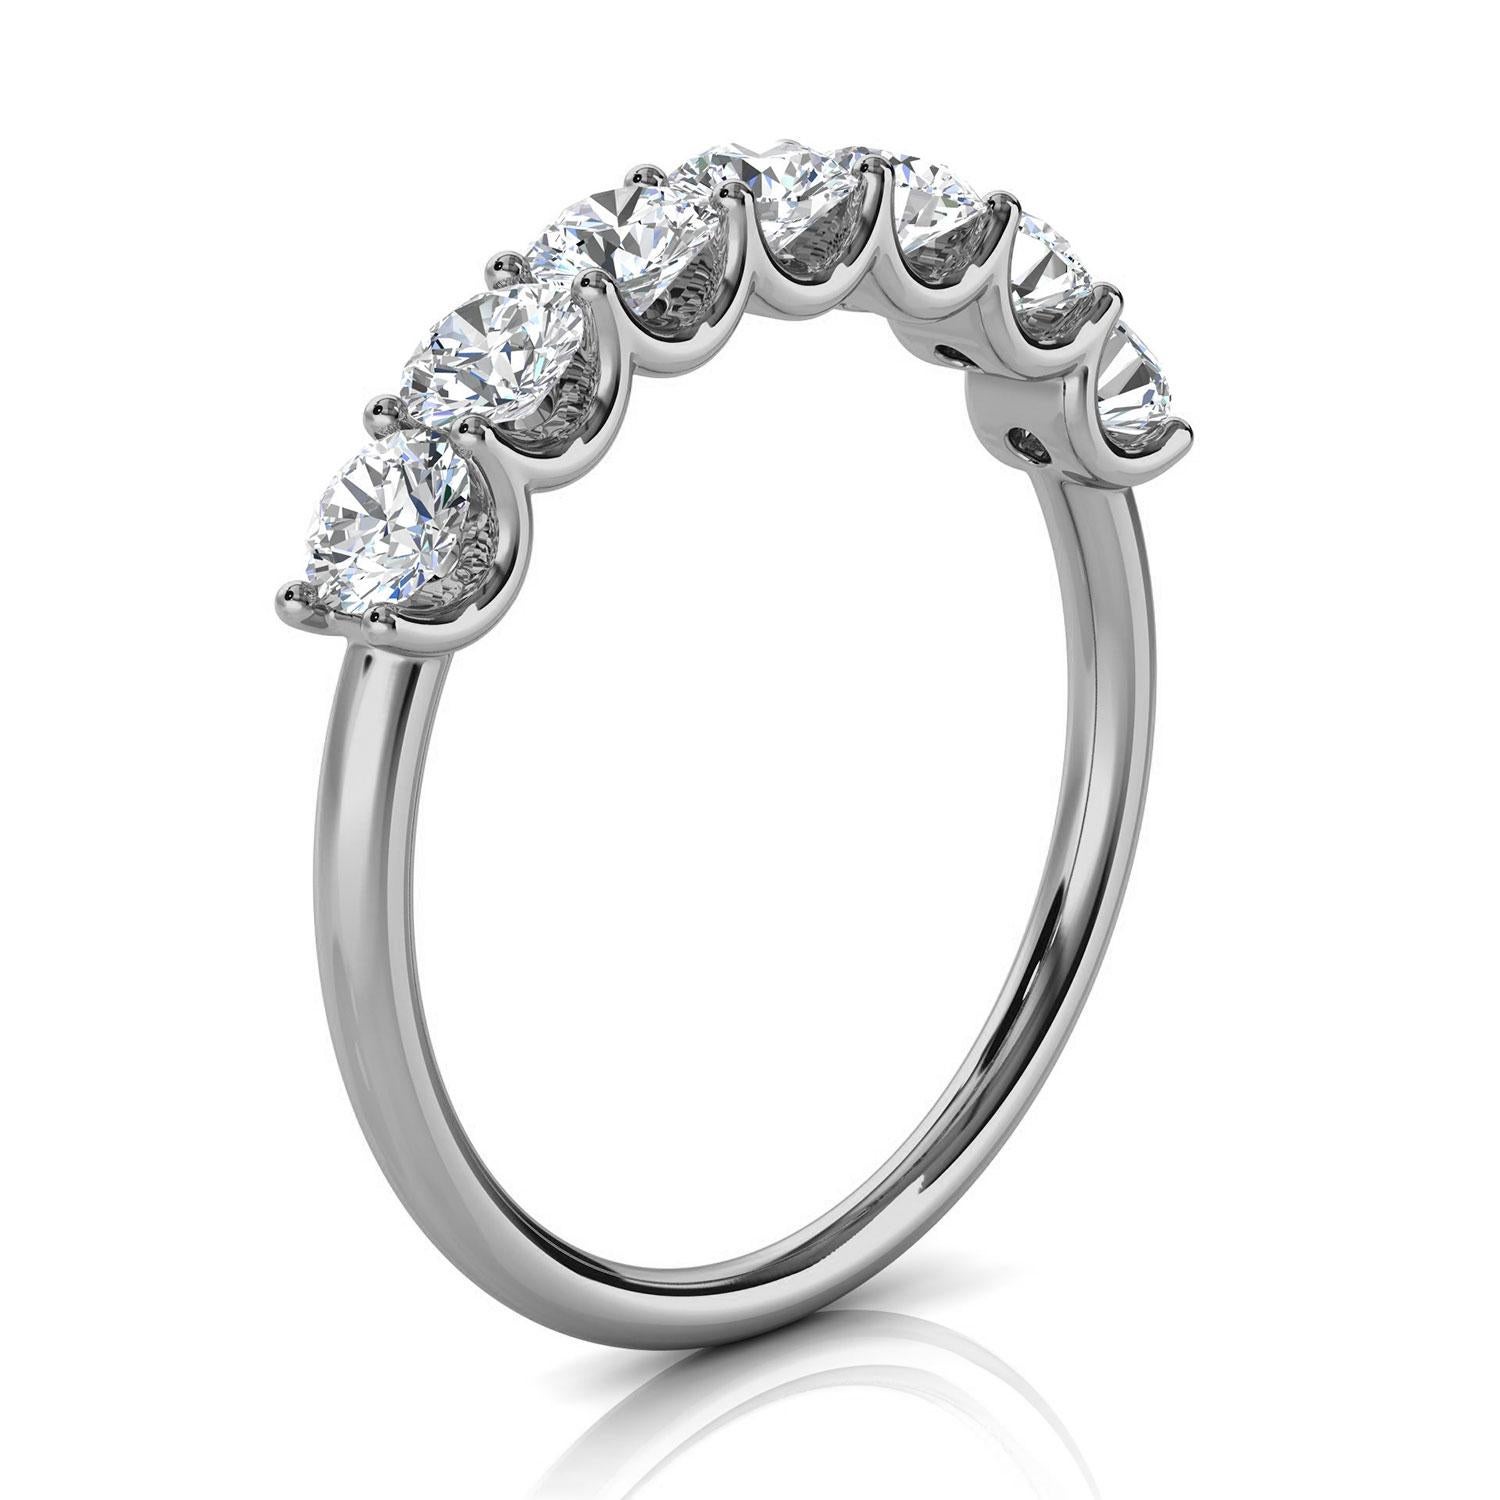 Diese Delicate Ring verfügt über sieben (7) schwimmende Brilliante runde Diamanten in 